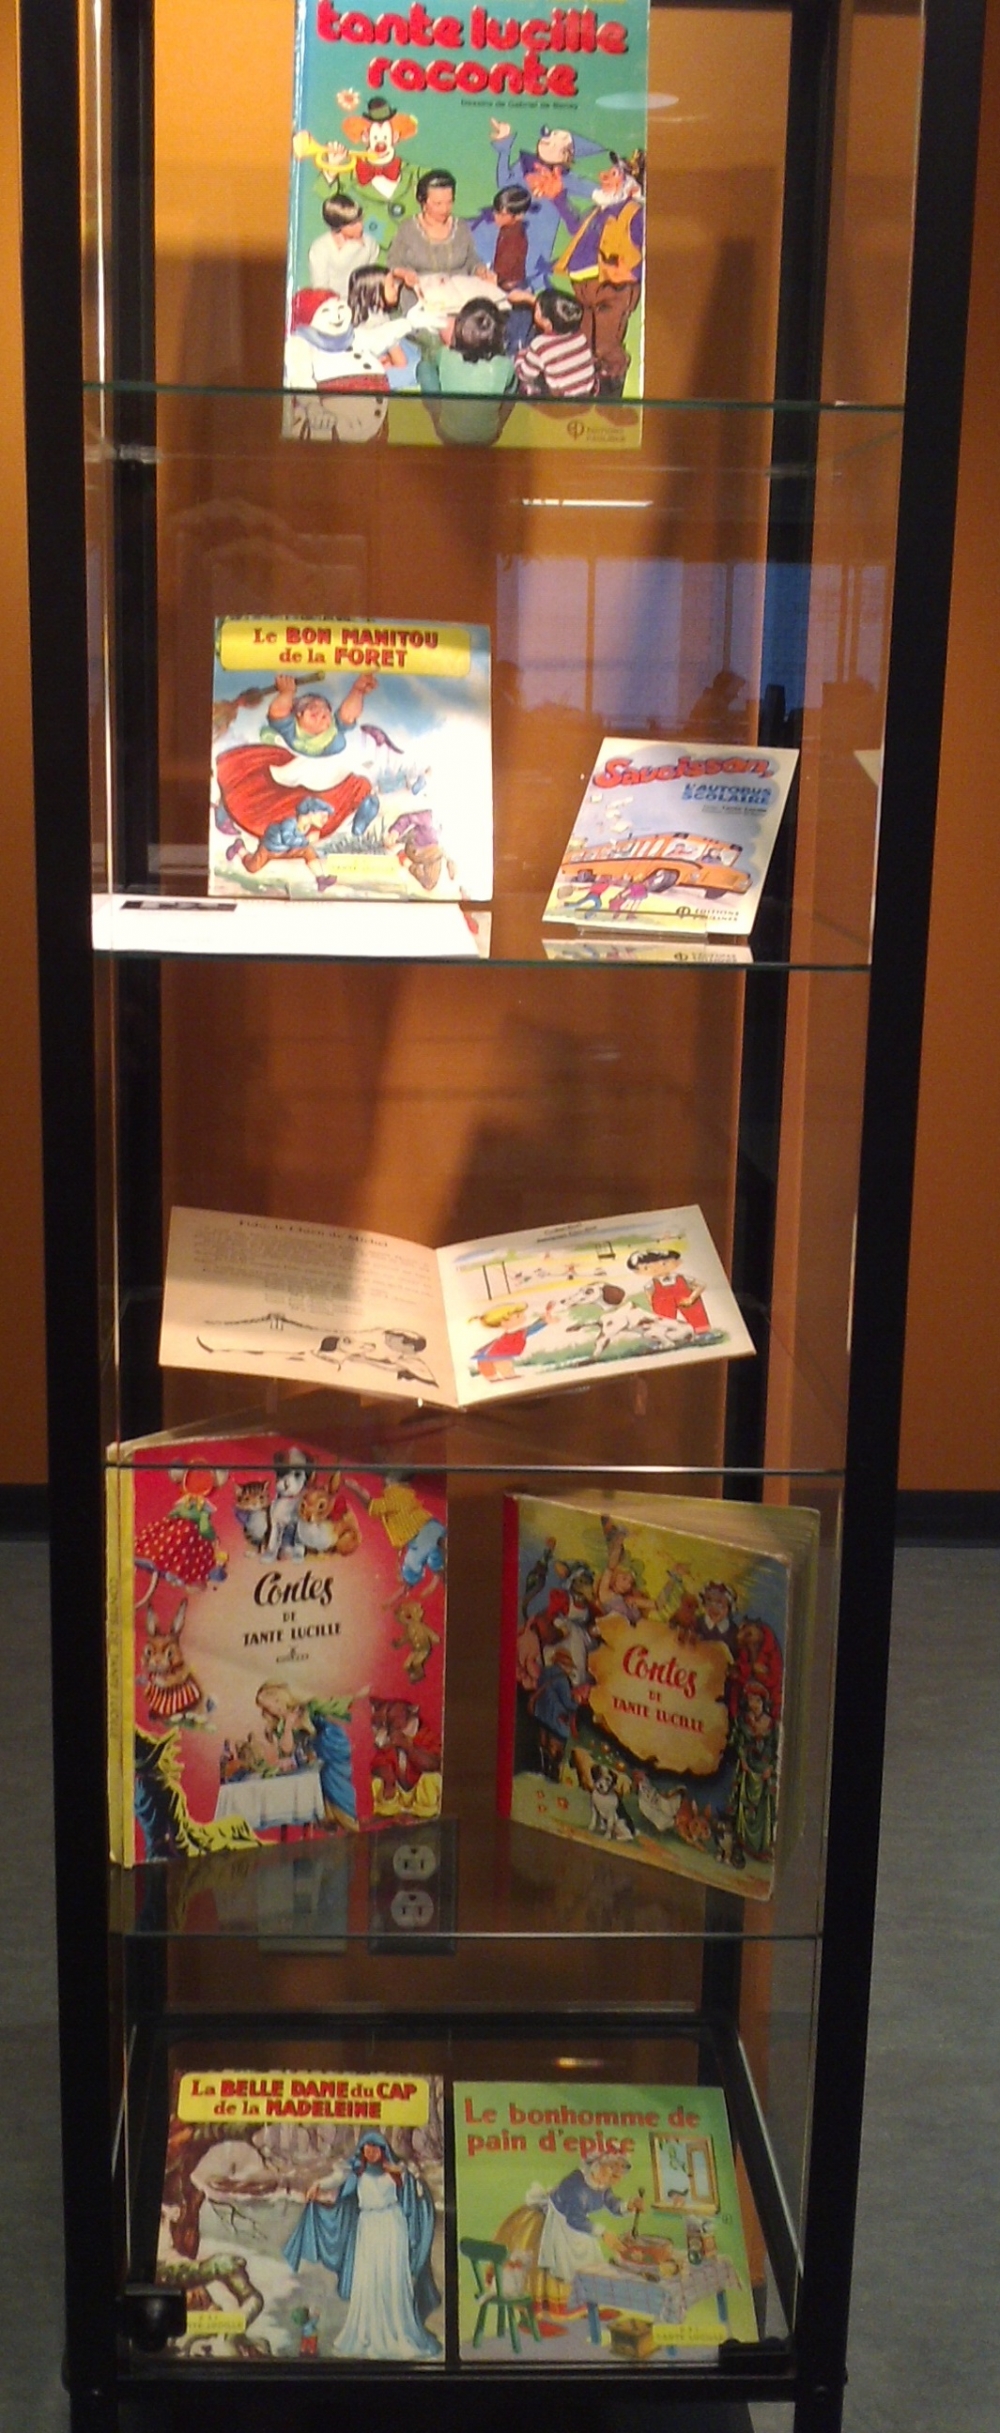 Exposition de livres pour enfants - Service des bibliothèques et archives -  Université de Sherbrooke